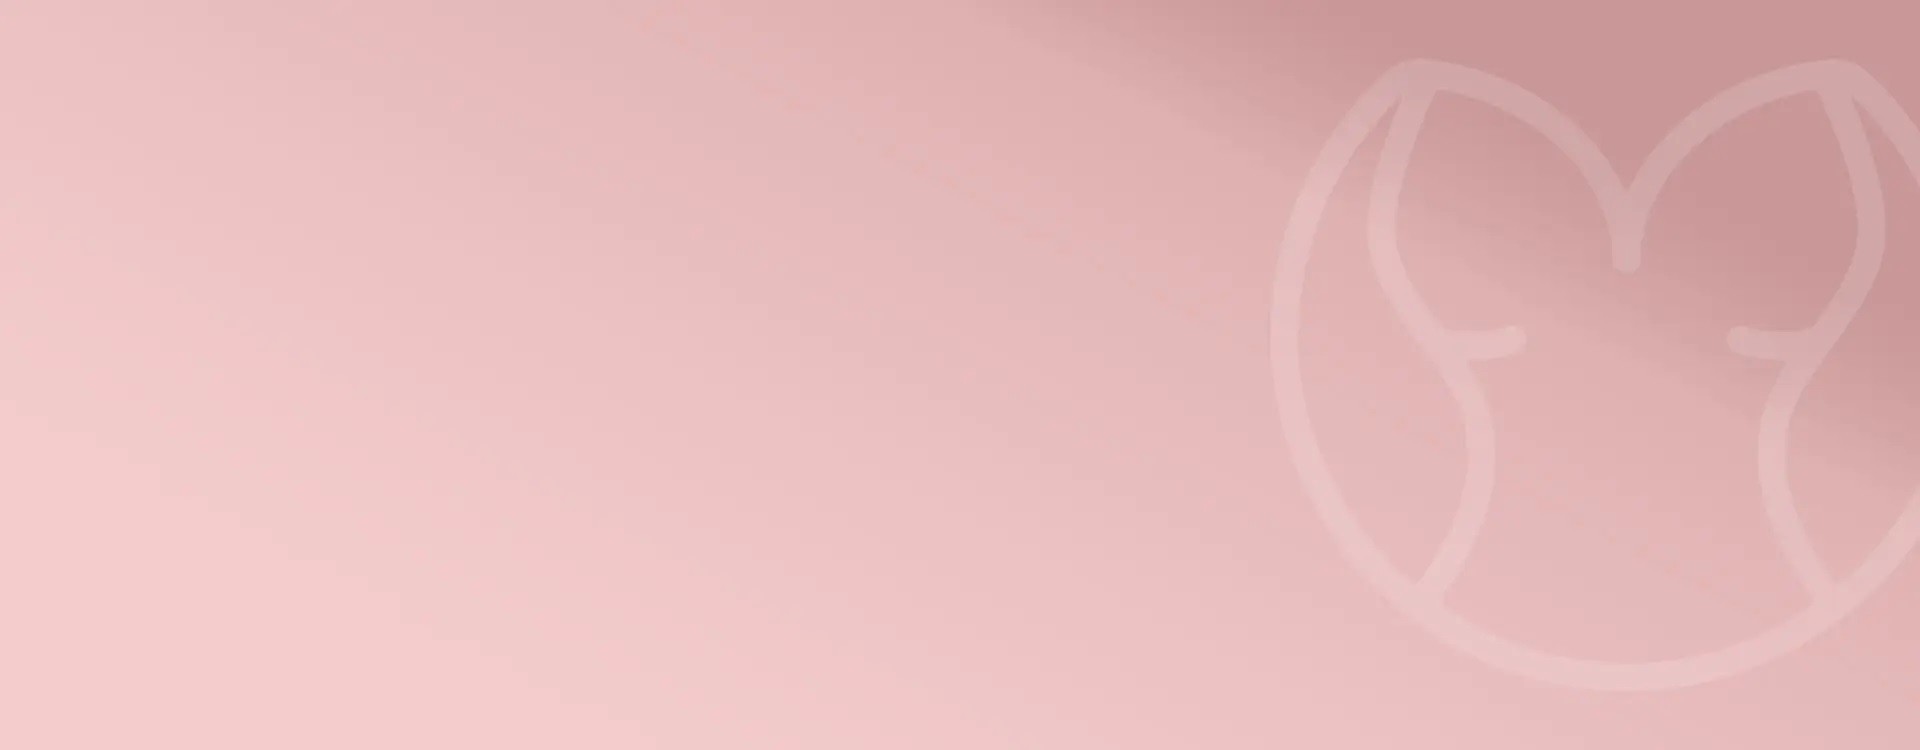 Różowa bielizna damska w sklepie Dkaren.pl. Zobacz różnego rodzaju bieliznę damską w kolorze różowym, w różnych materiałach. Bogata oferta produktów bielizny nocnej.